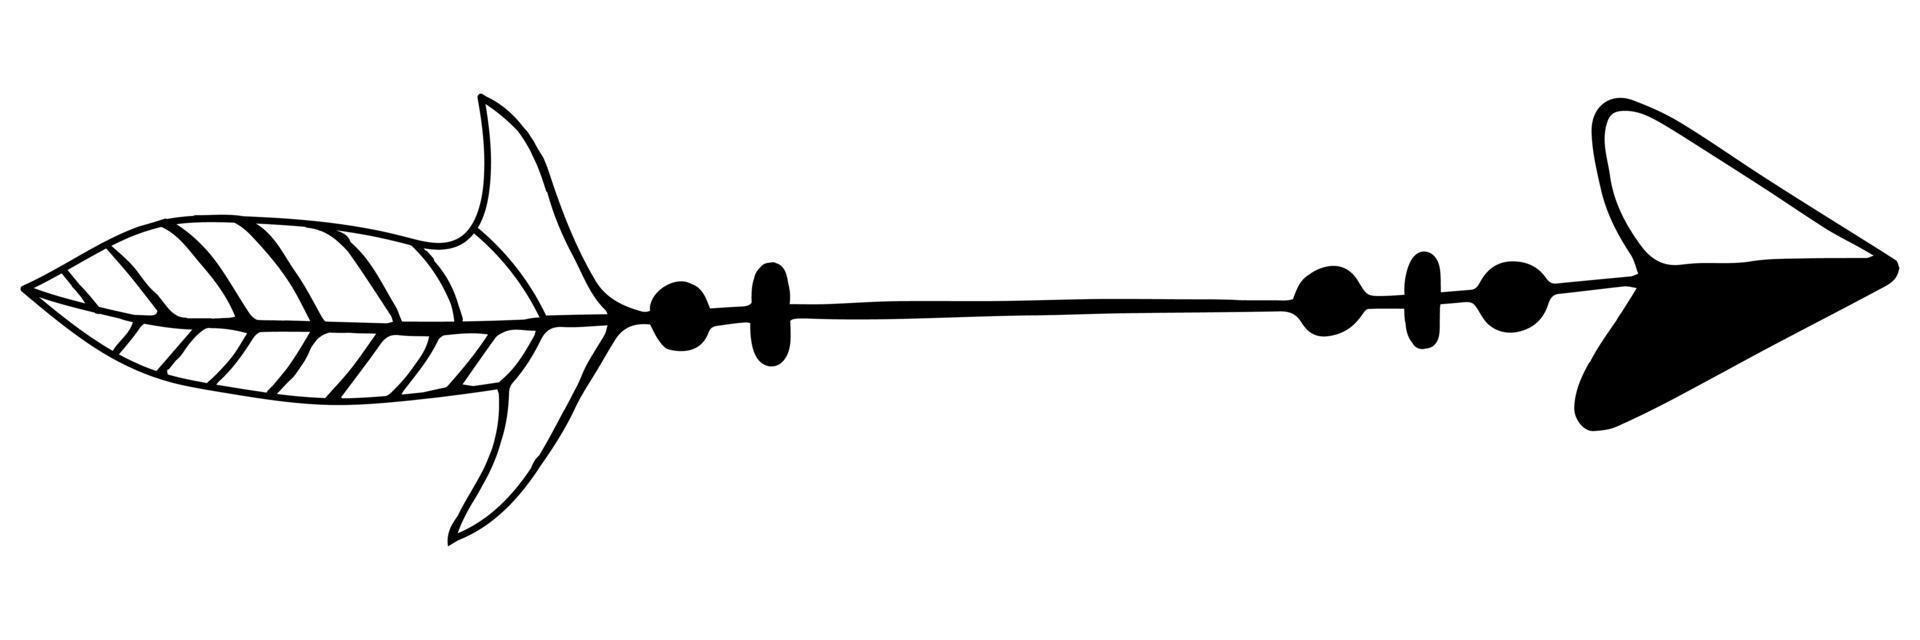 Vektor-Illustration eines Pfeils für einen Bogen. ein isoliertes Bild eines Pfeils mit einer Feder im Boho-Stil. schwarzer umriss, gekritzelillustration. vektor